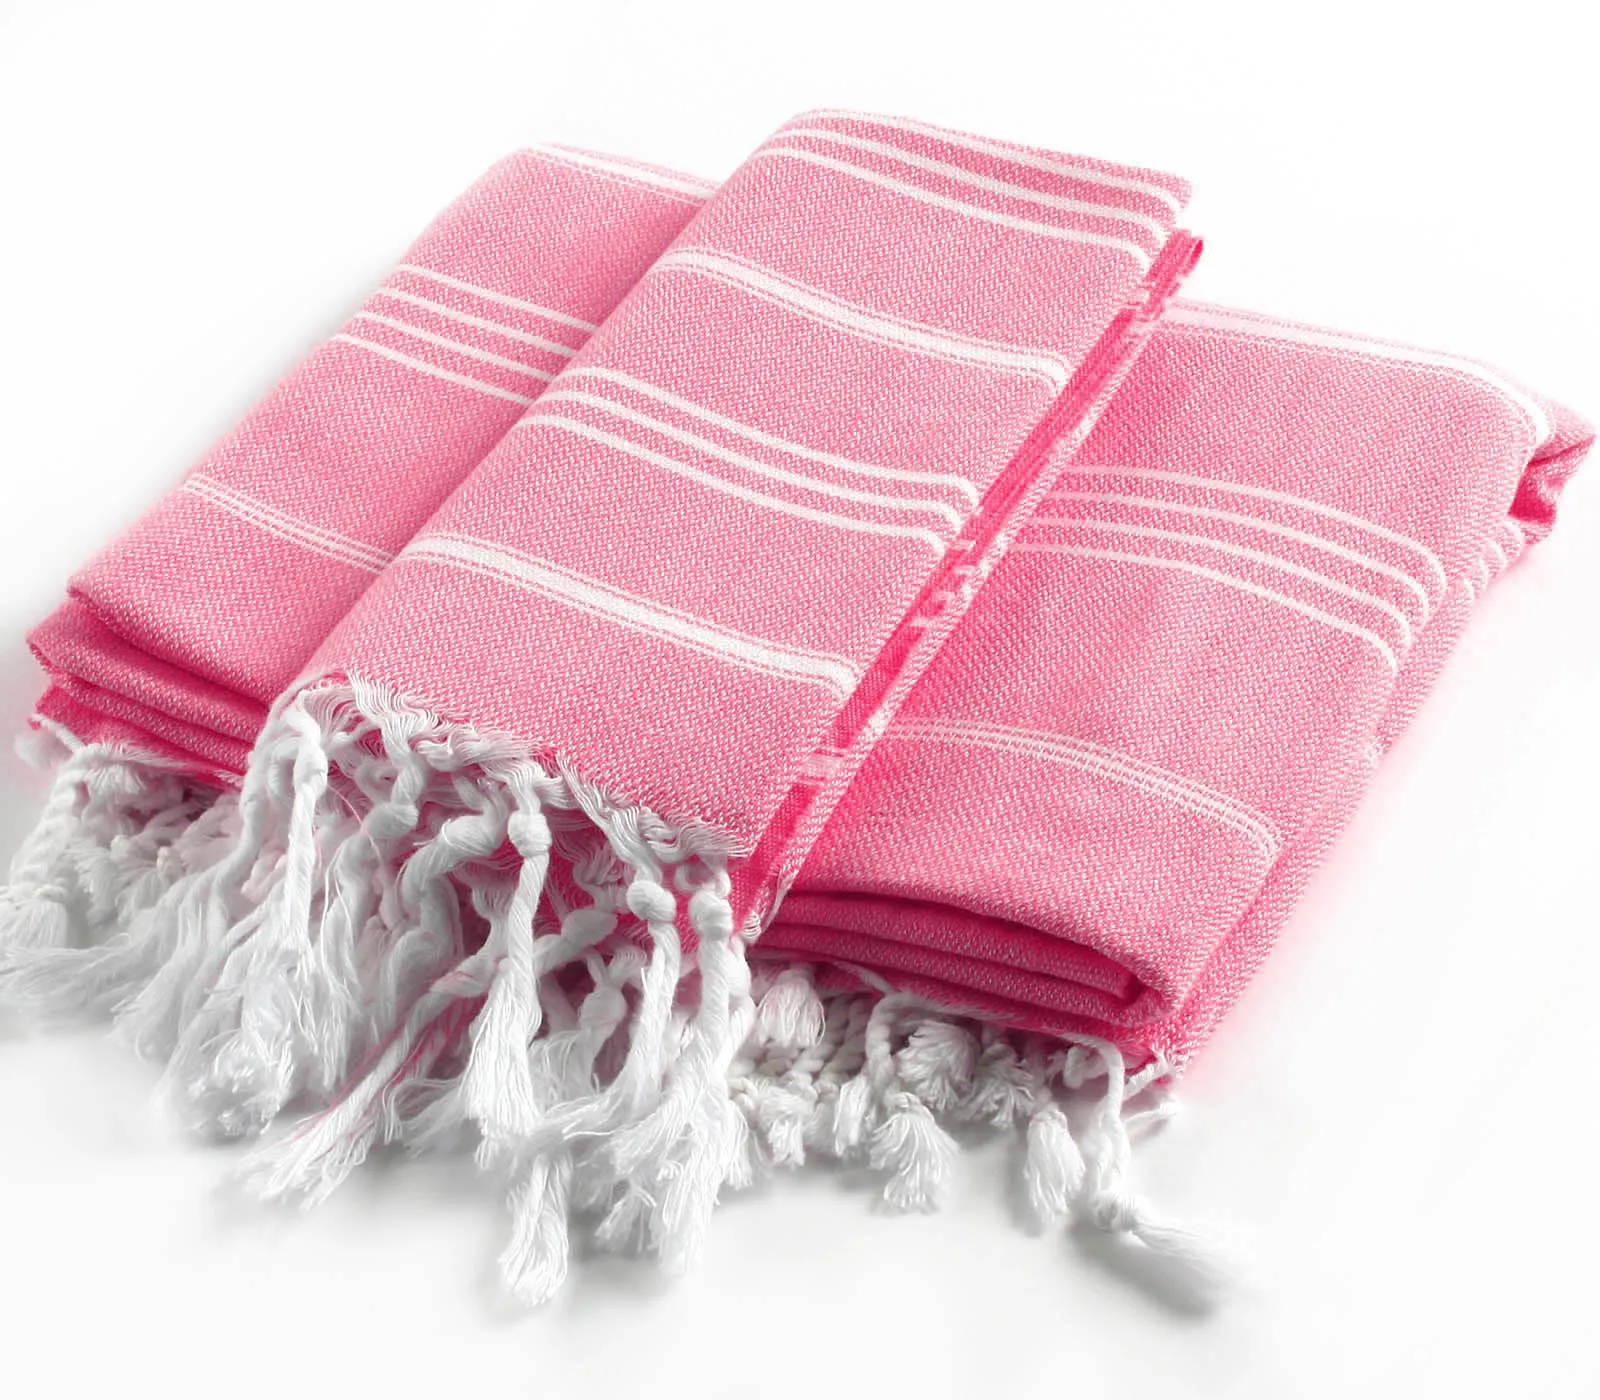 

CACALA %100 Cotton 2 Pieces Turkish Towel Pestemal Set - 1 Piece 100x180Cm Bath Beach Towel 1 Piece 60x90Cm Hand Face Towel